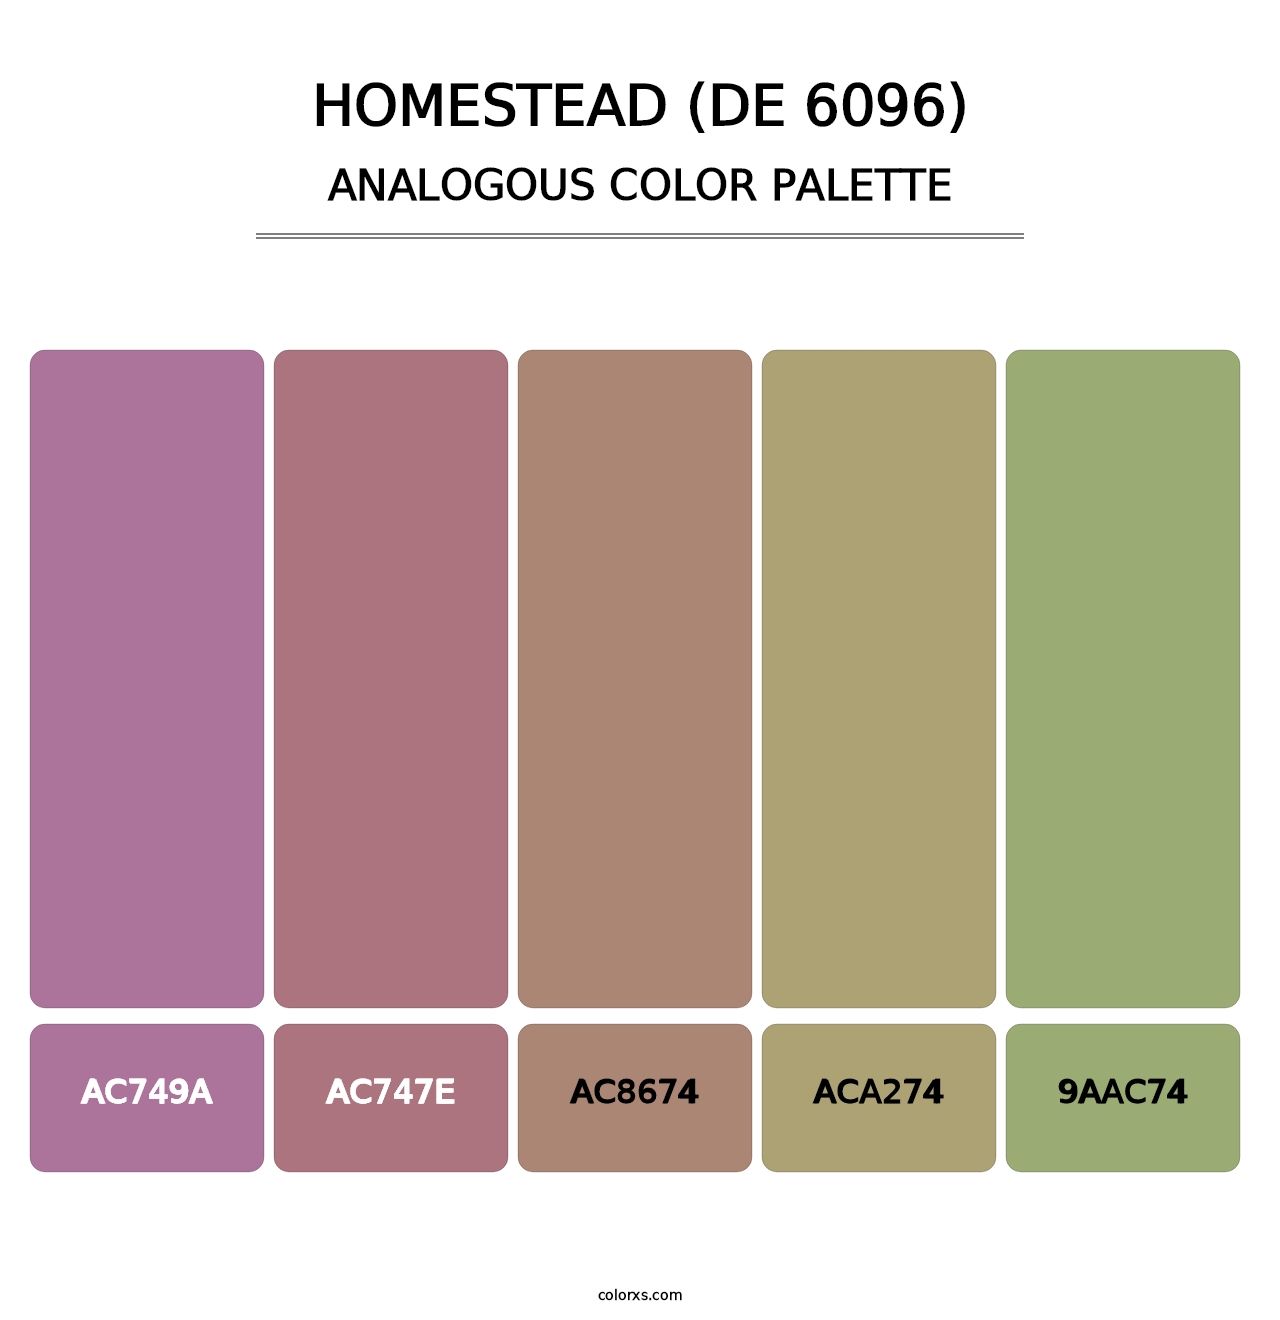 Homestead (DE 6096) - Analogous Color Palette